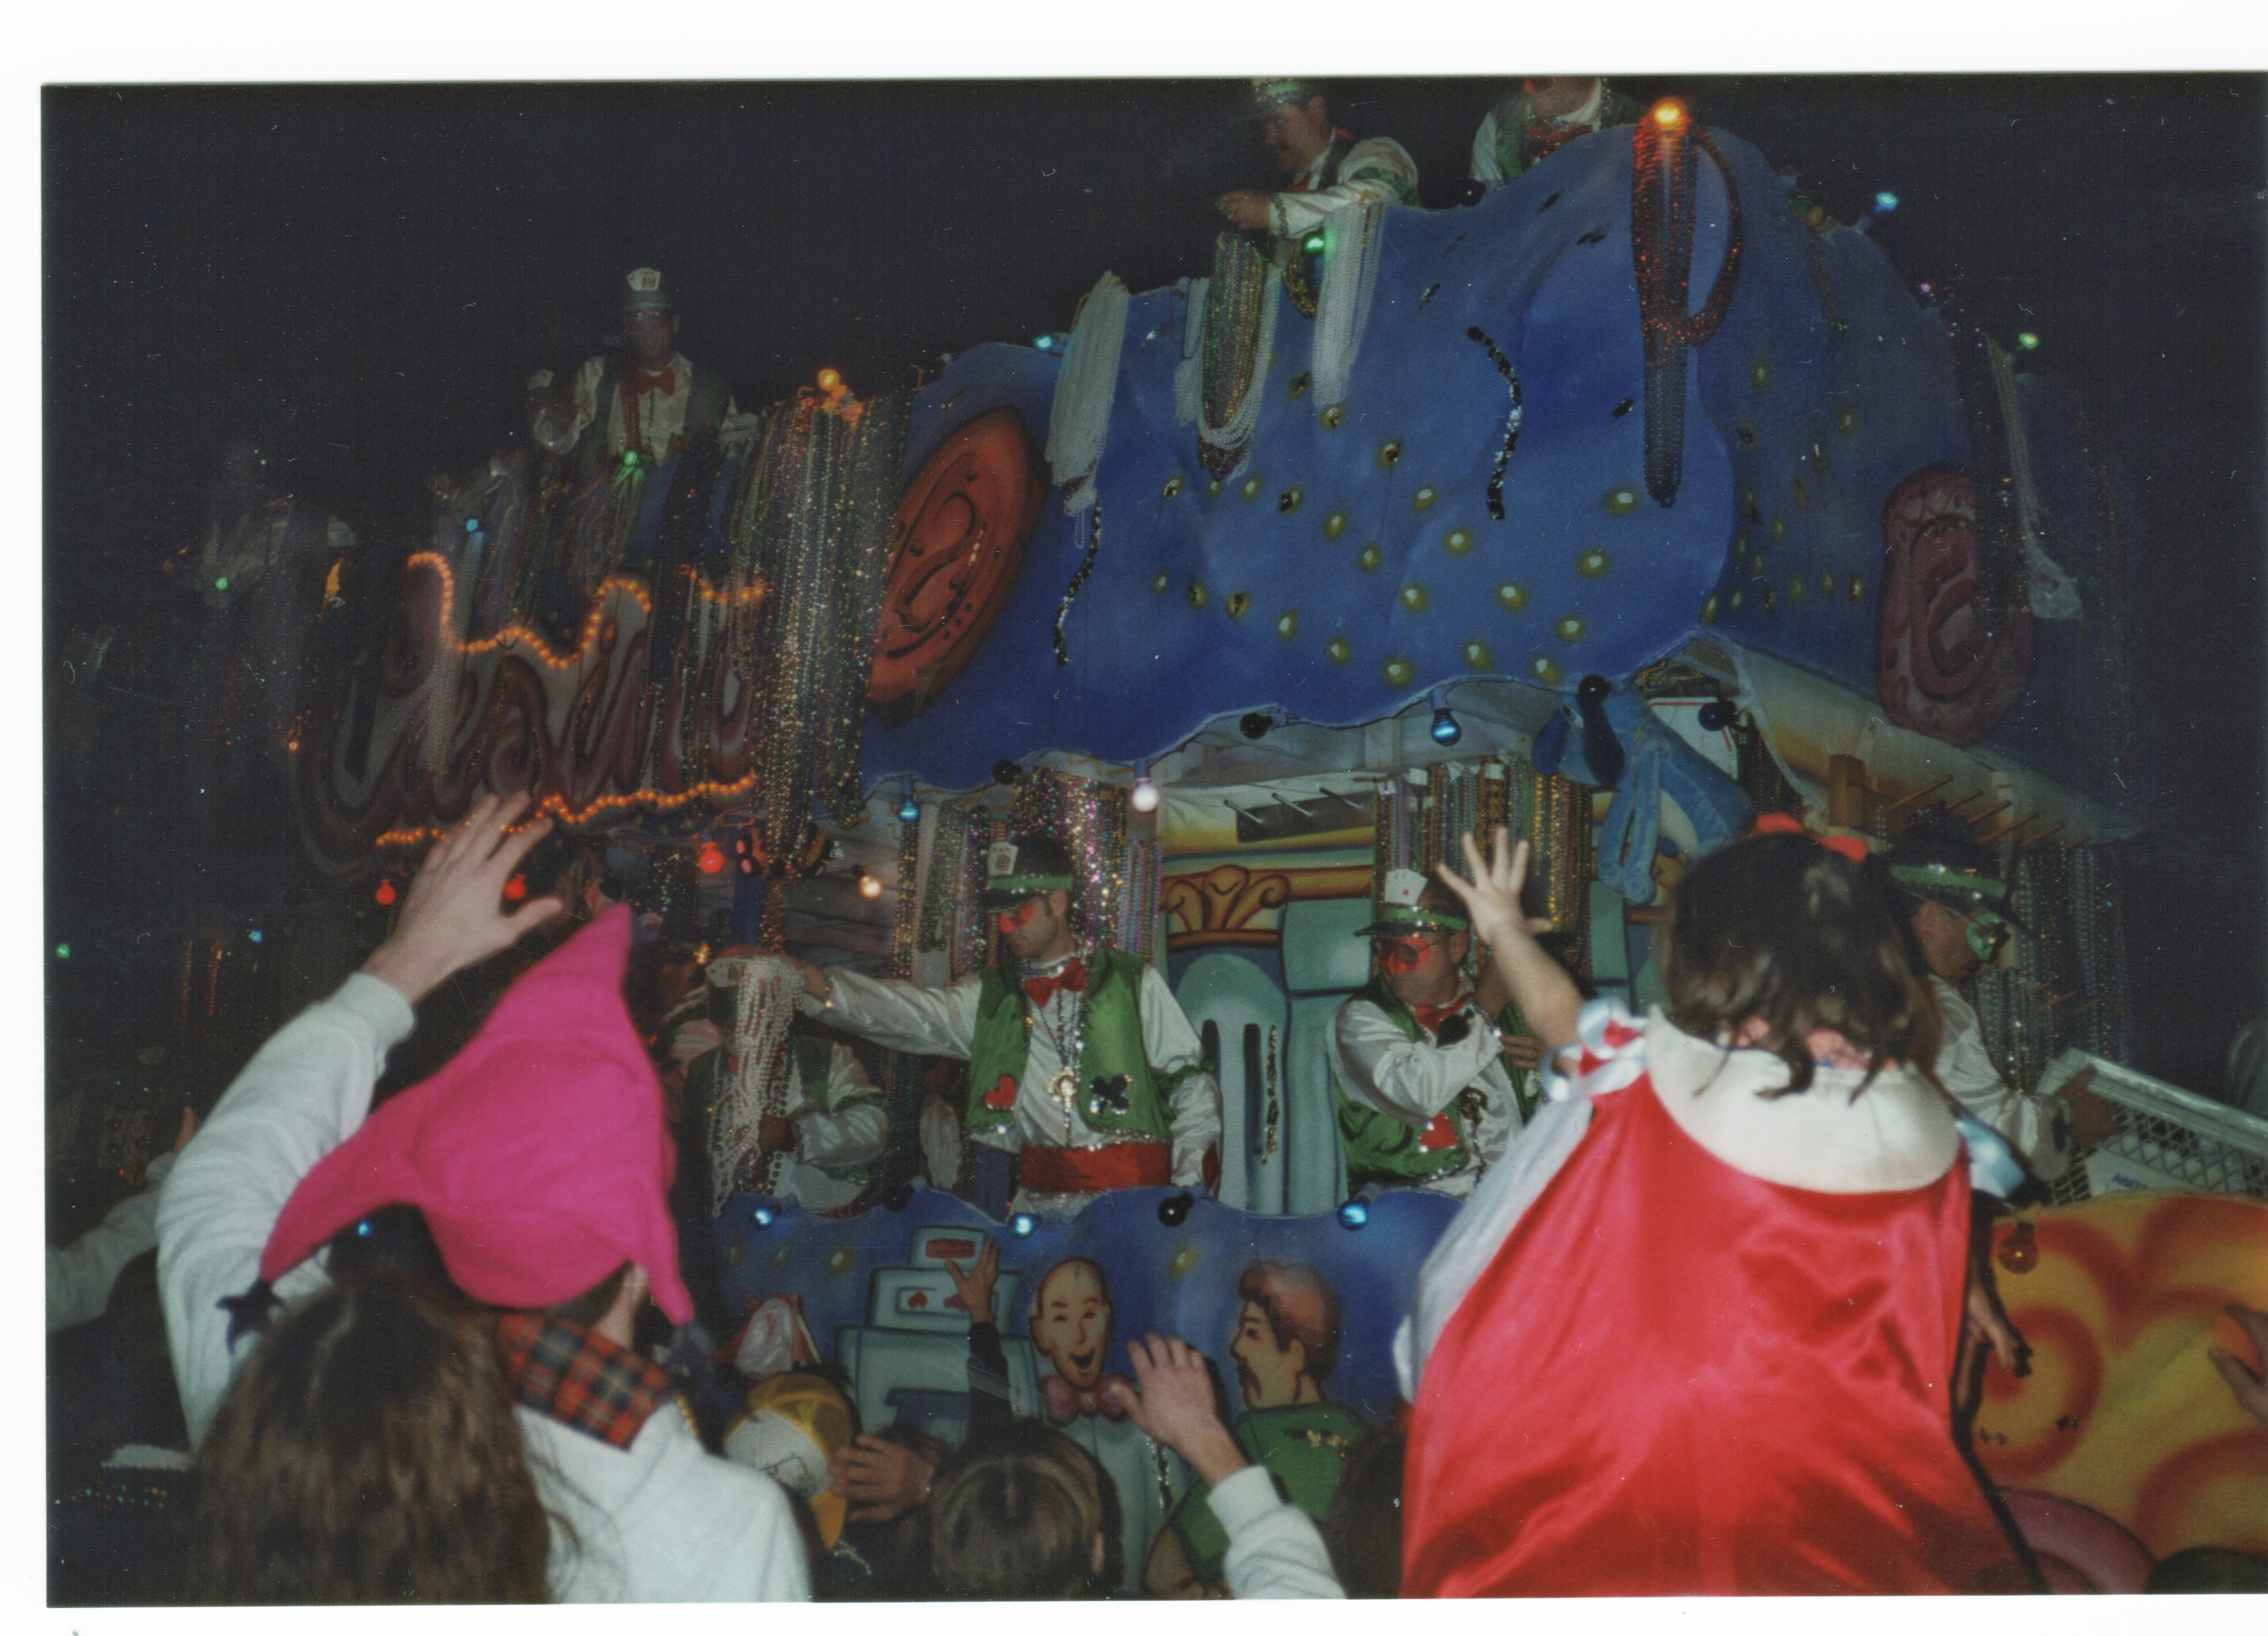 a mardi gras parade float